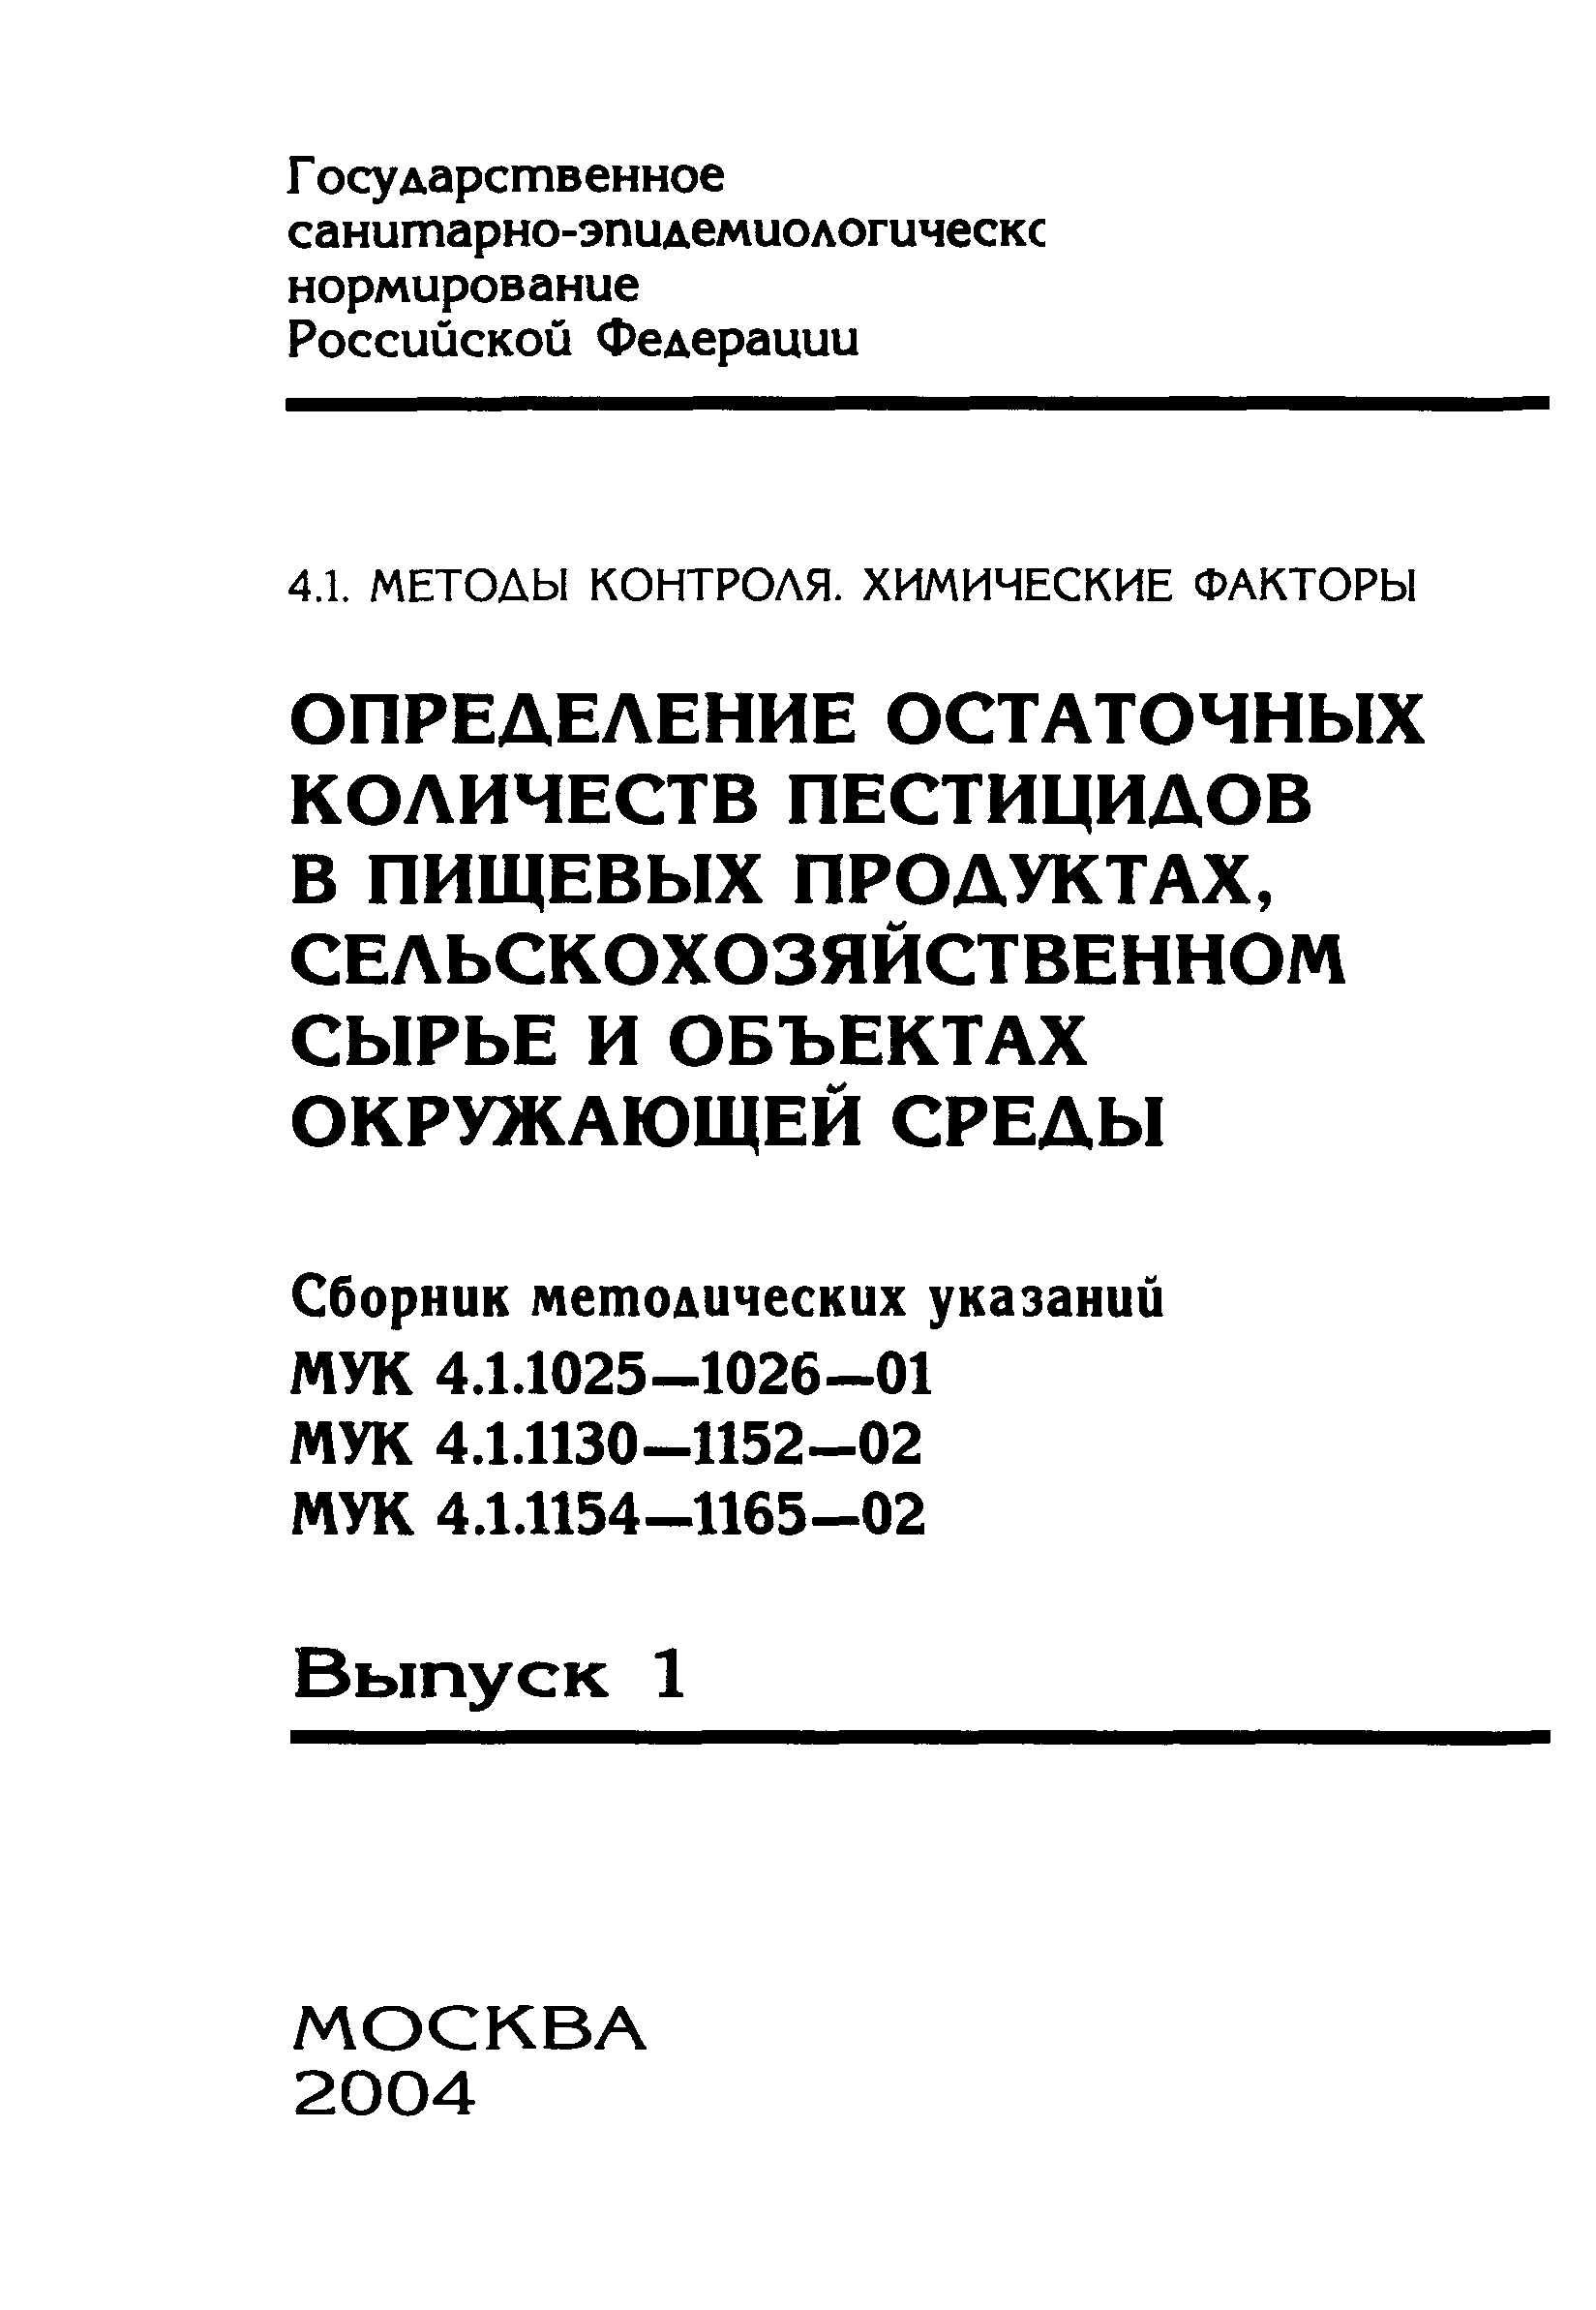 МУК 4.1.1025-01